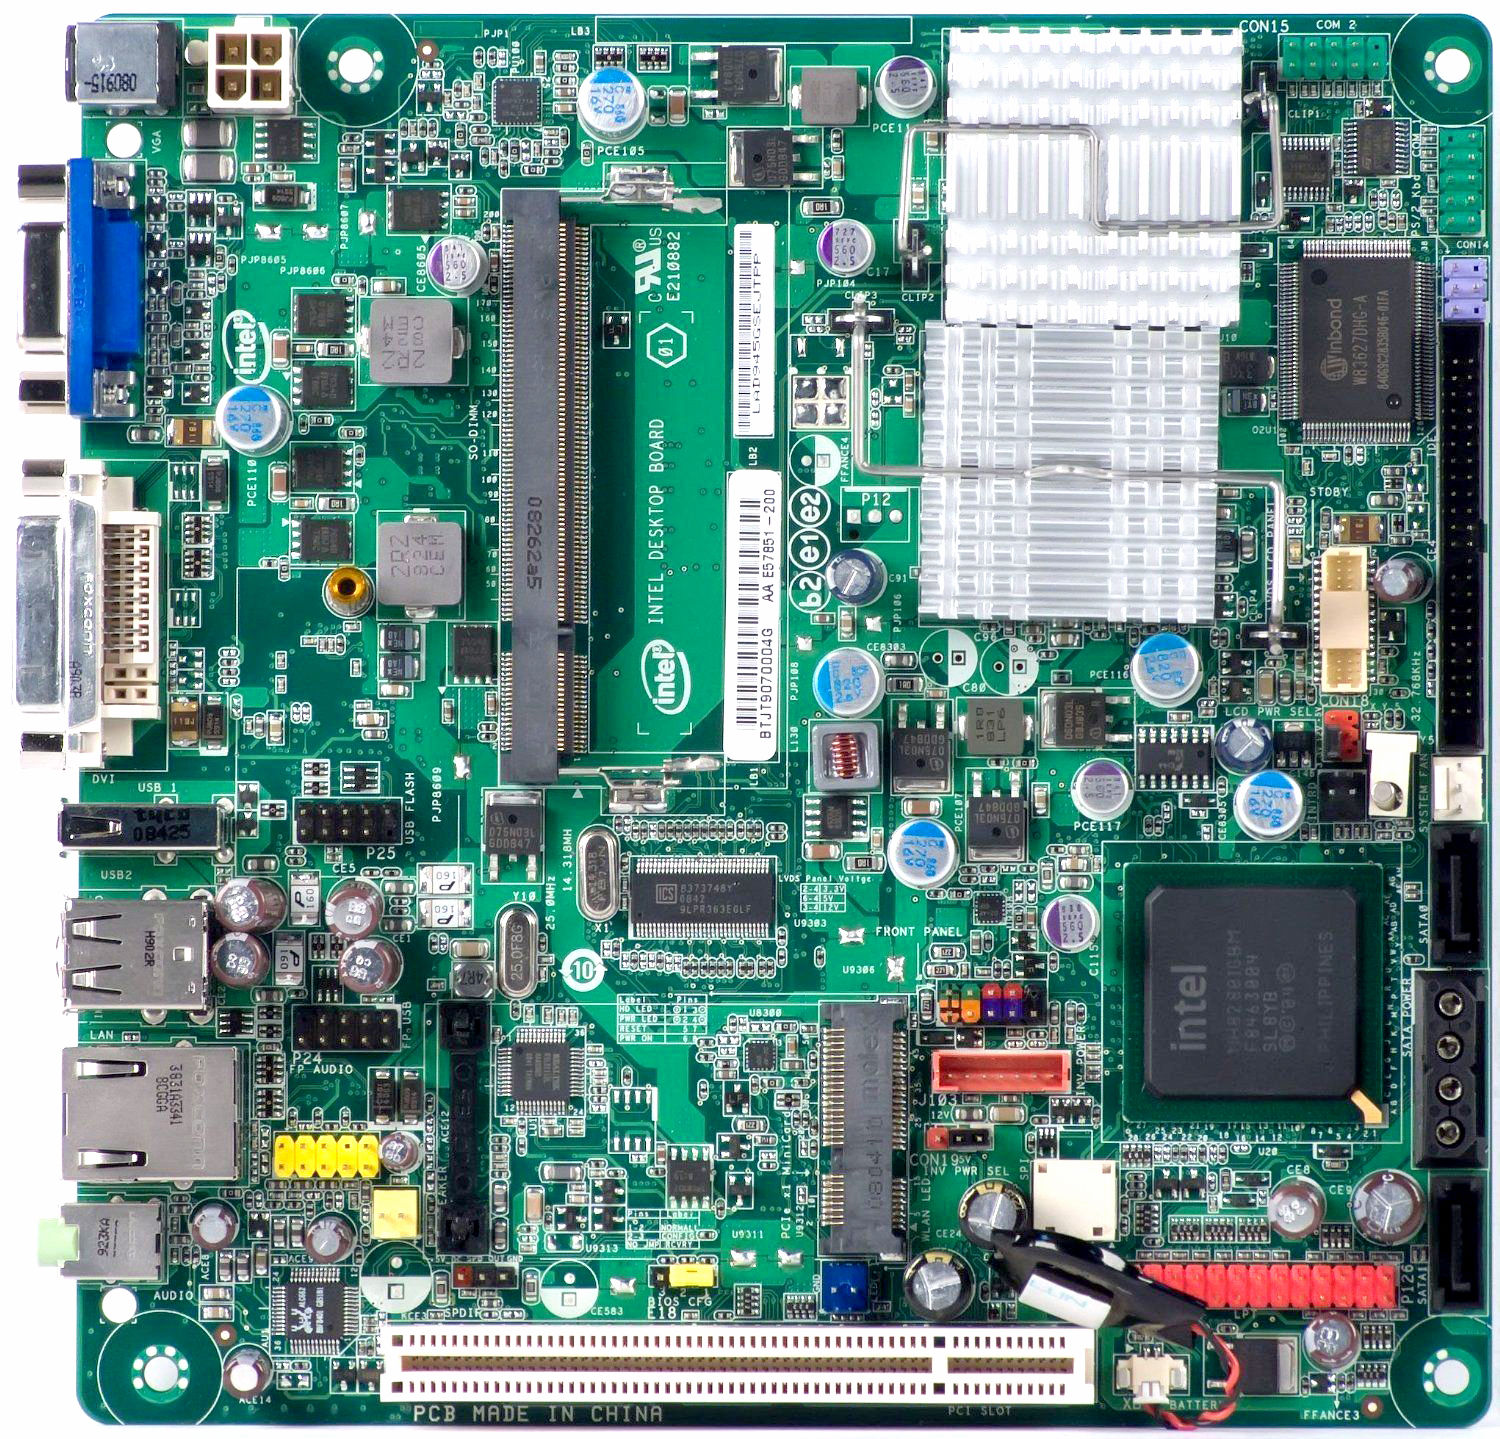 New Intel desktop board D945GSEJT atom N270 fanless low pow